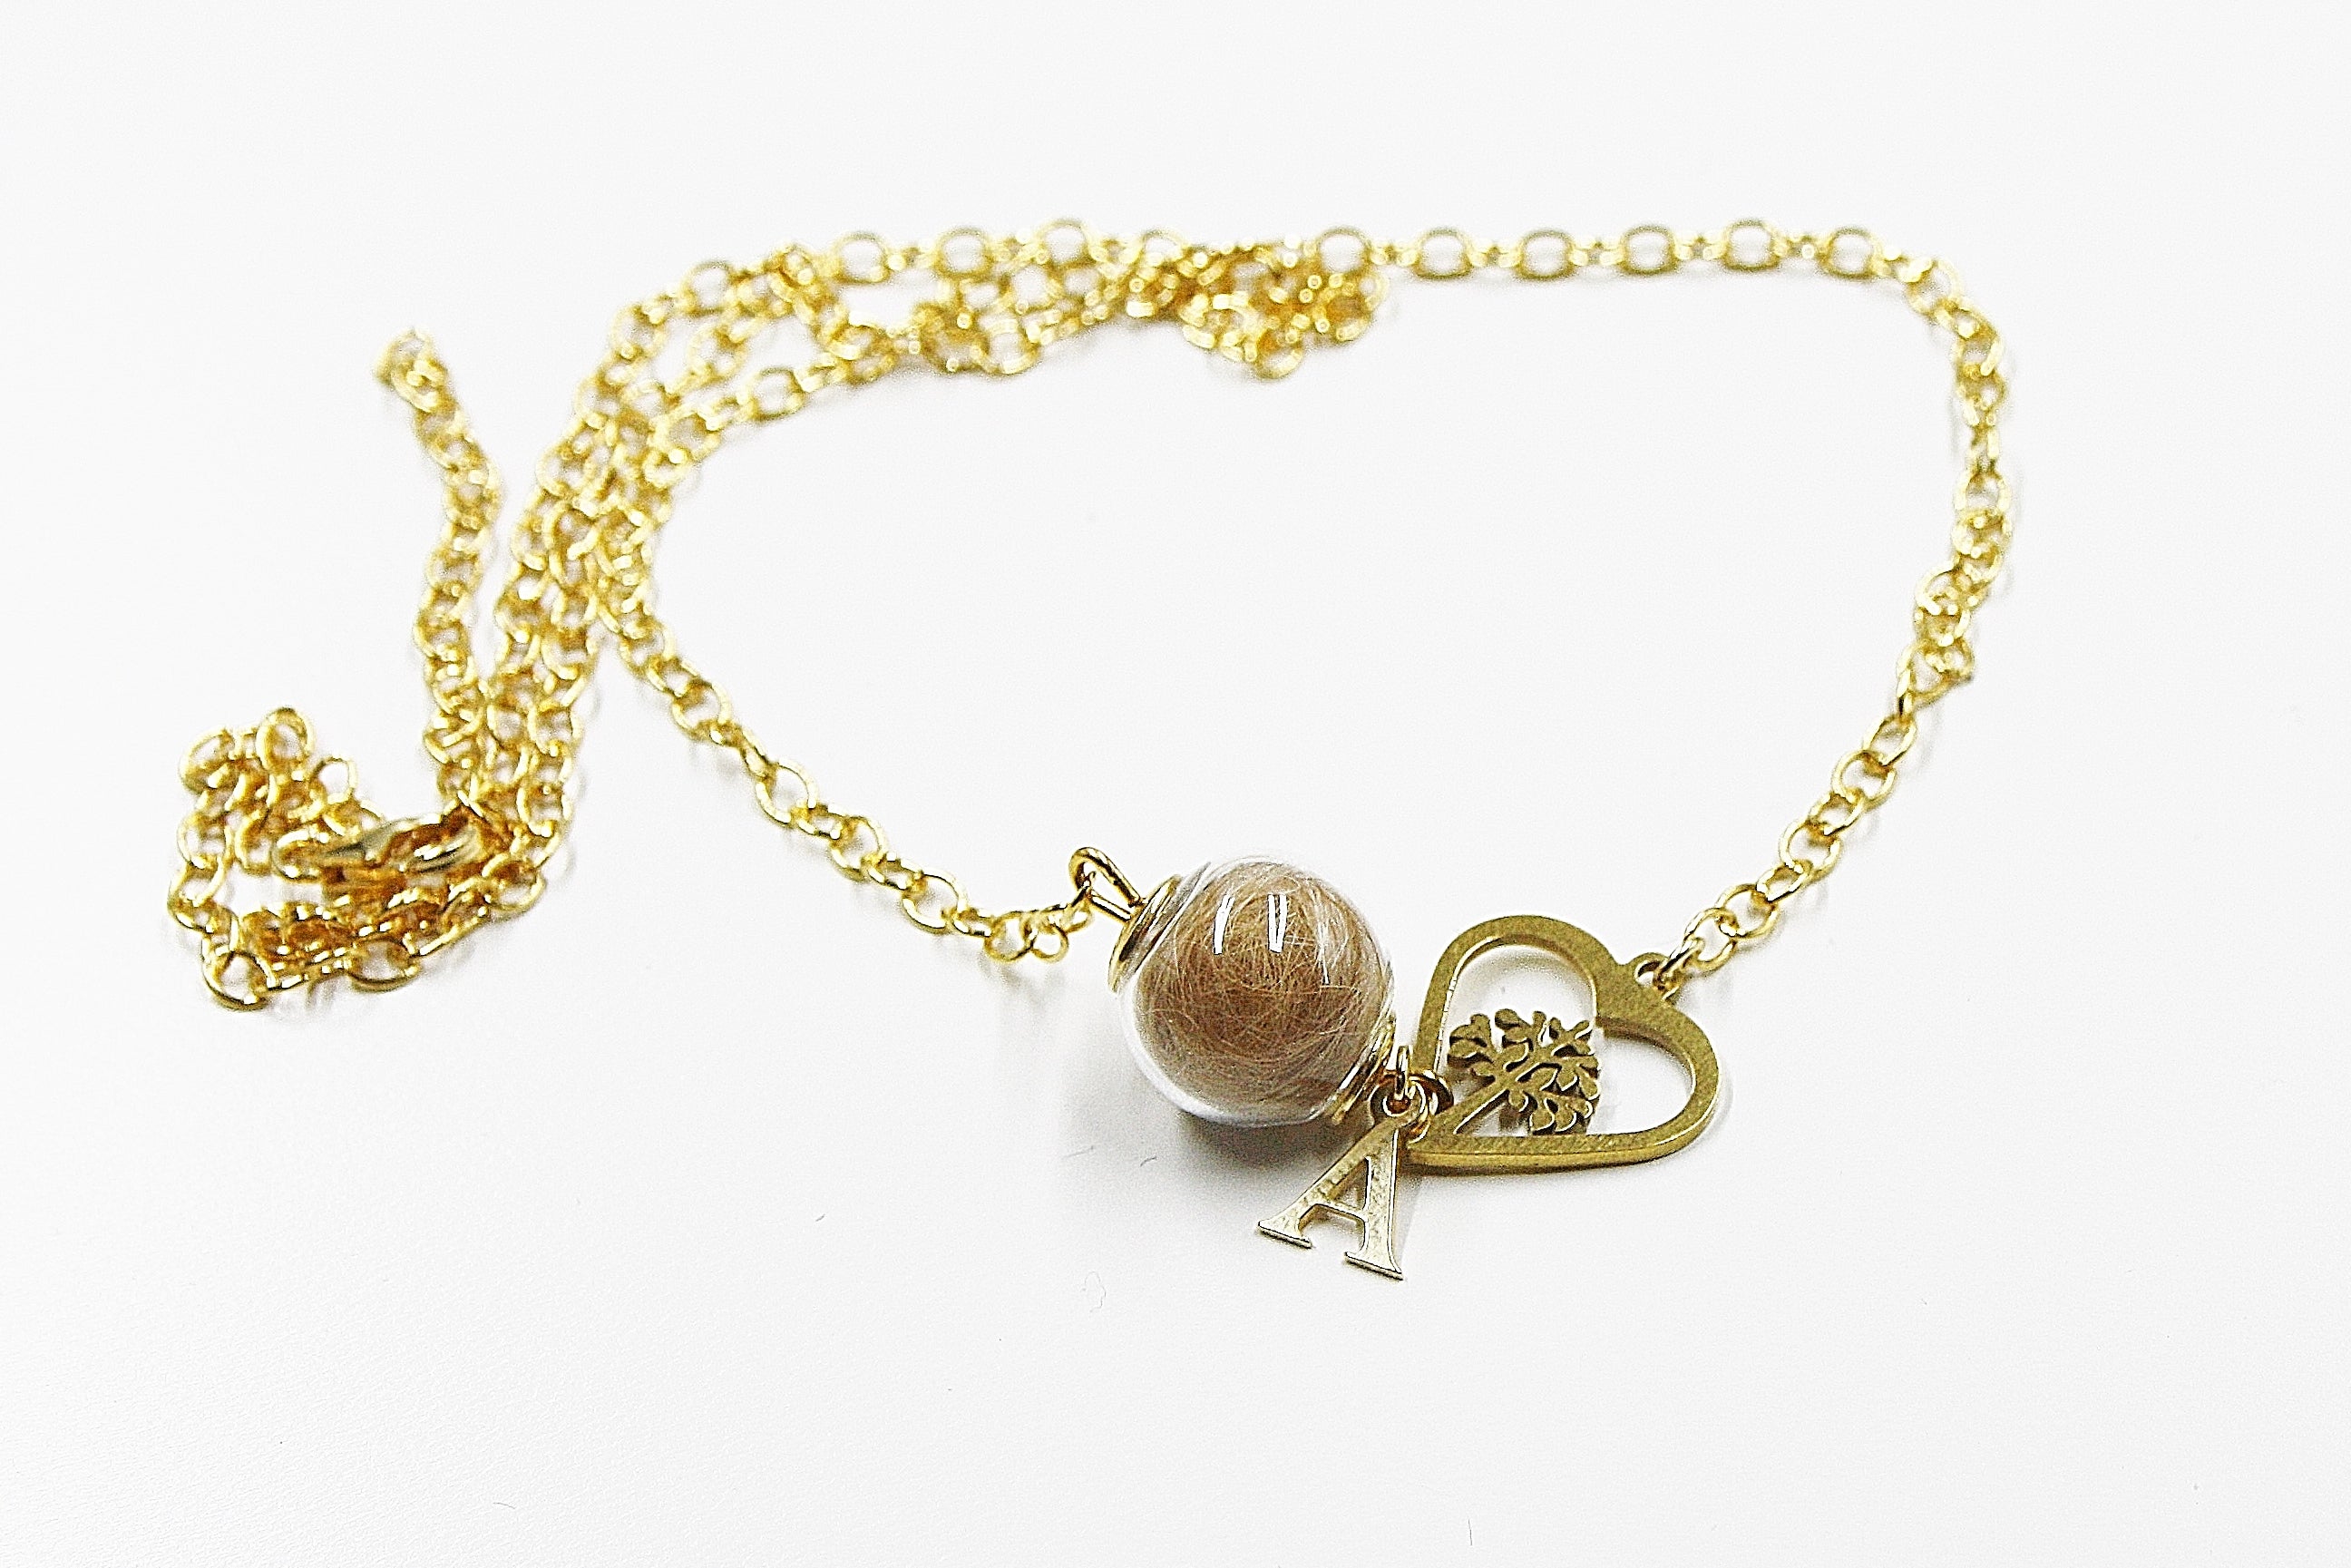 Tierhaar Halskette mit Herz, Lebensbaum und Initiale, Silber925 vergoldet oder Silber, Andenken an ein verstorbenes Haustier